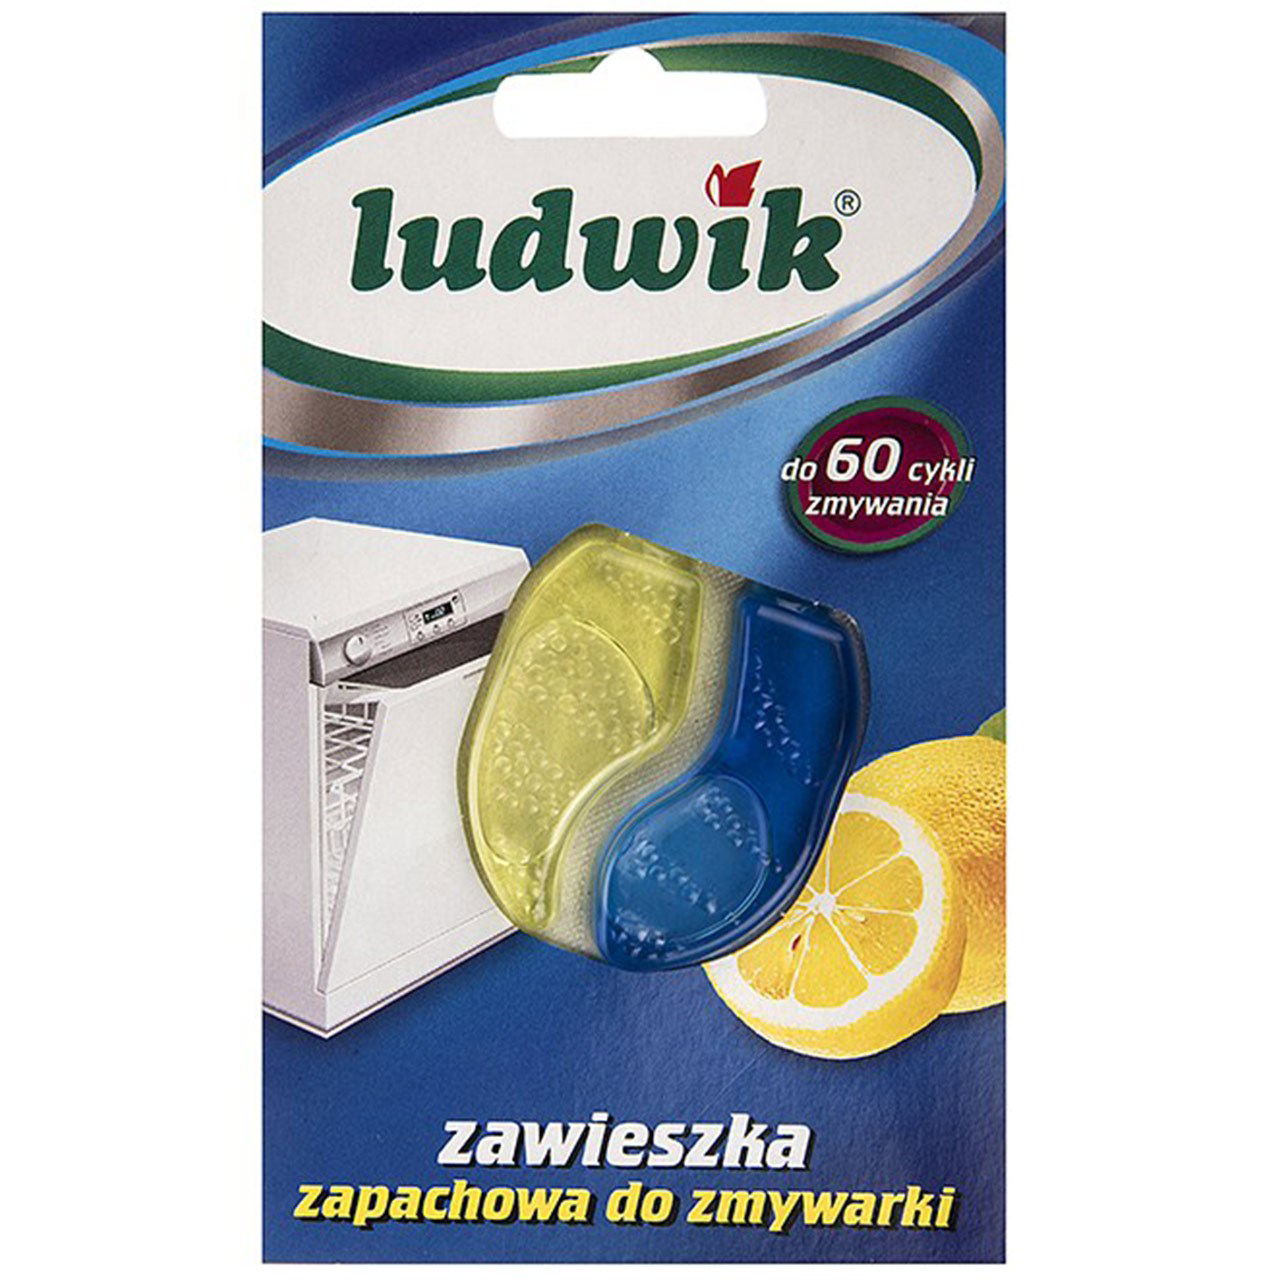 خوشبو کننده محفظه ماشین ظرفشویی لودویک